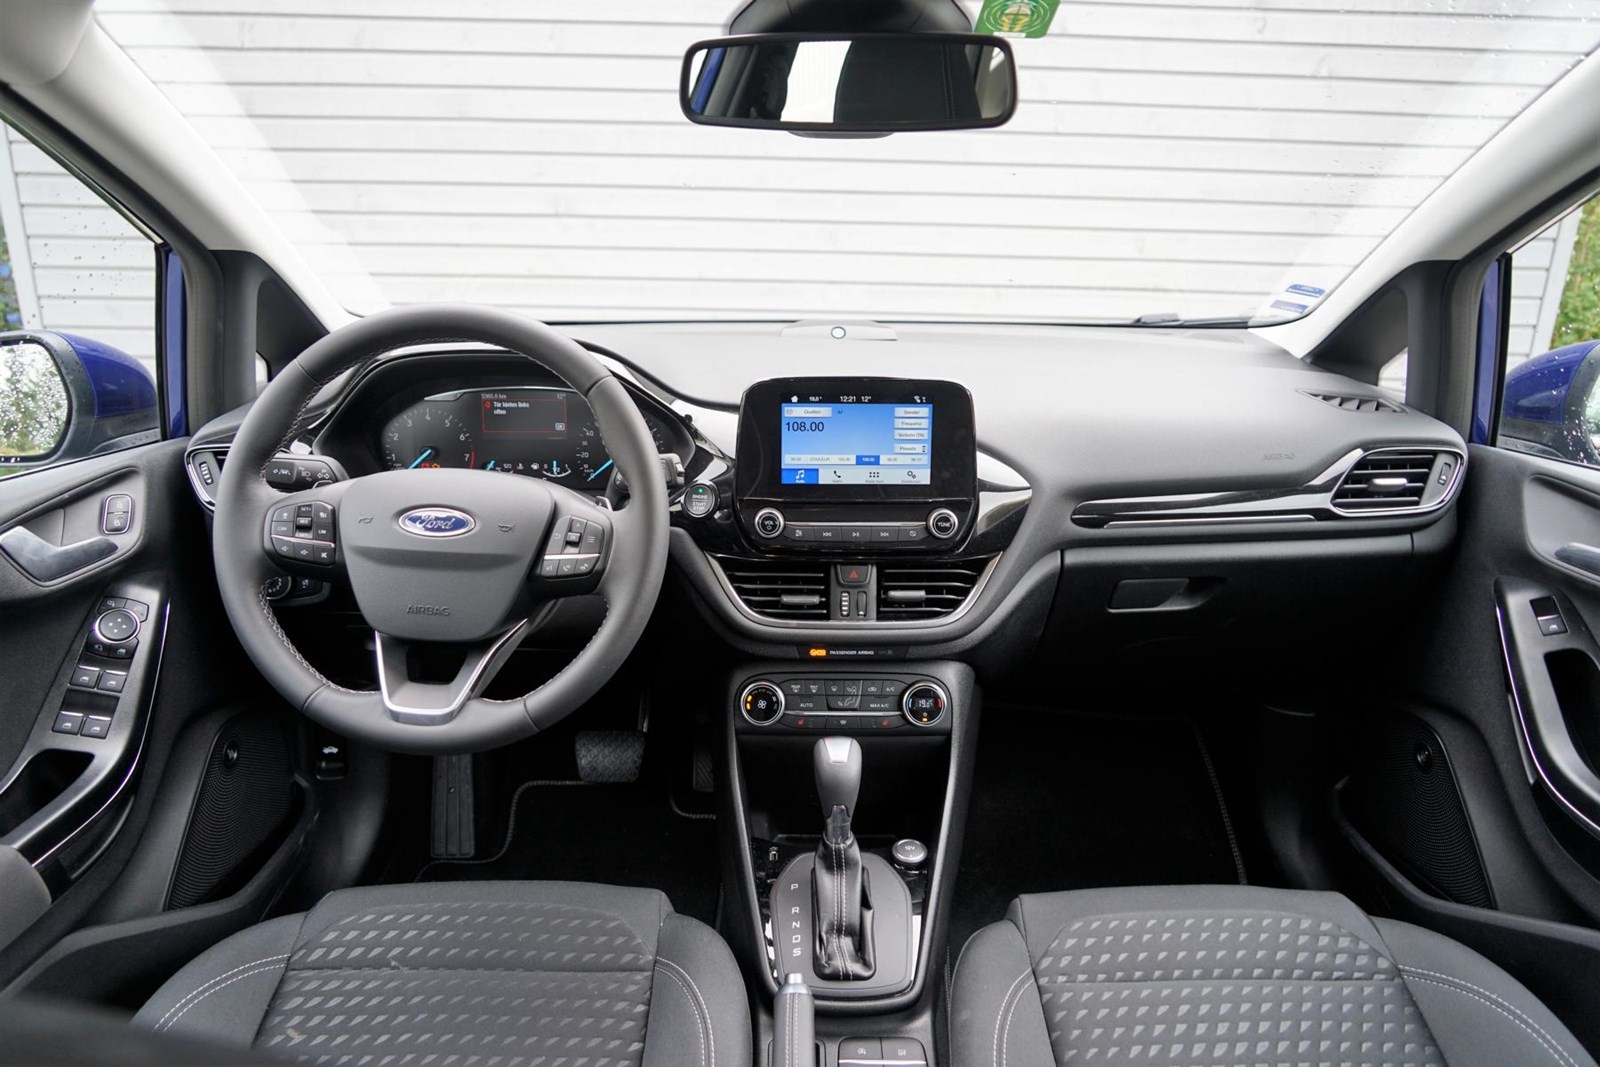 Ford Fiesta Testbericht Mit Nr 8 An Die Macht